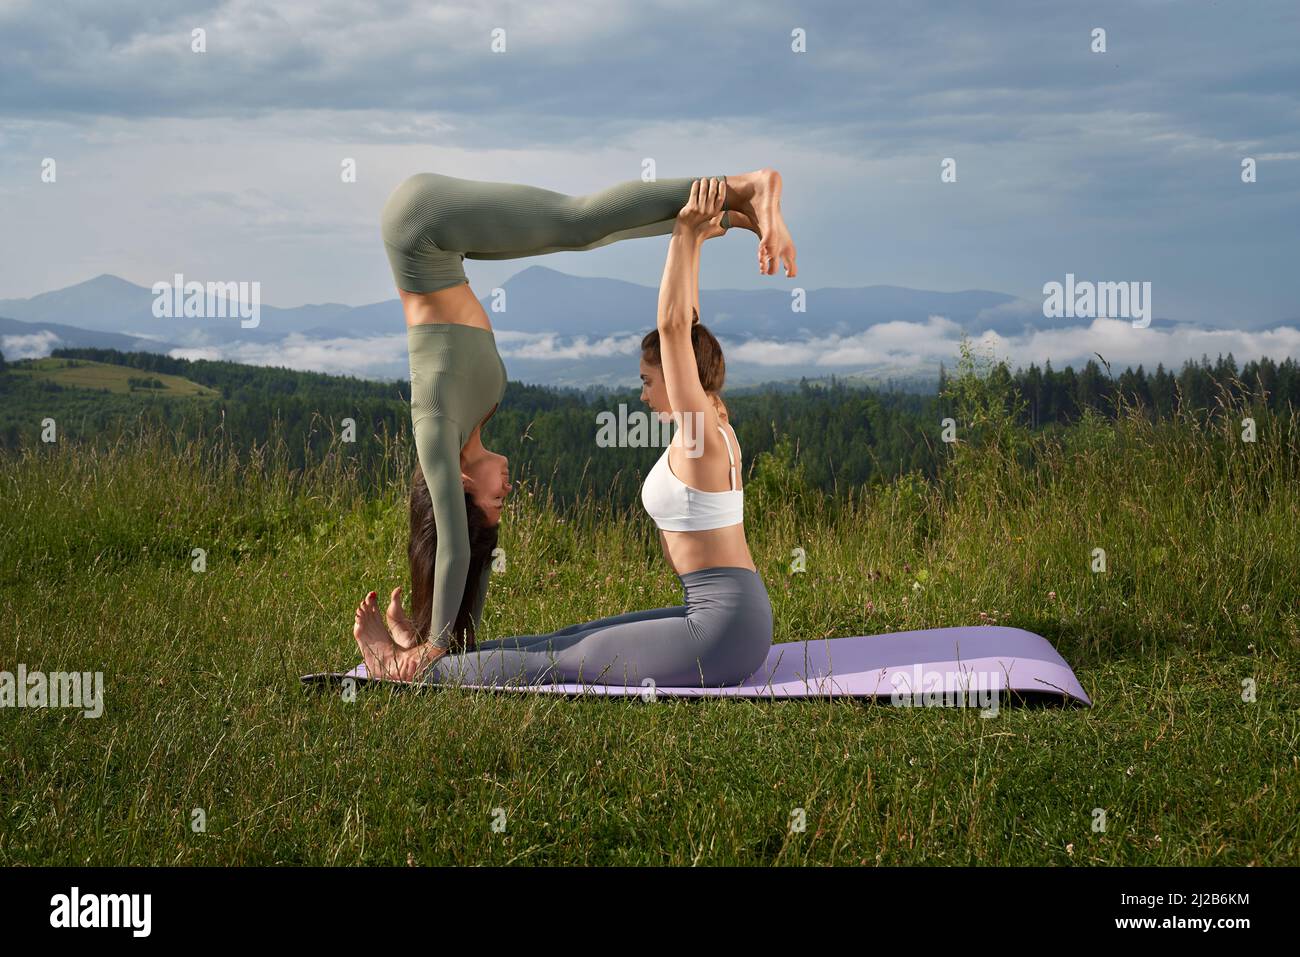 Vista lateral de las mujeres deportivas caucásicas en activo haciendo ejercicio común entre las montañas verdes. Dos mujeres jóvenes haciendo acro yoga durante el día de verano al aire libre. Foto de stock